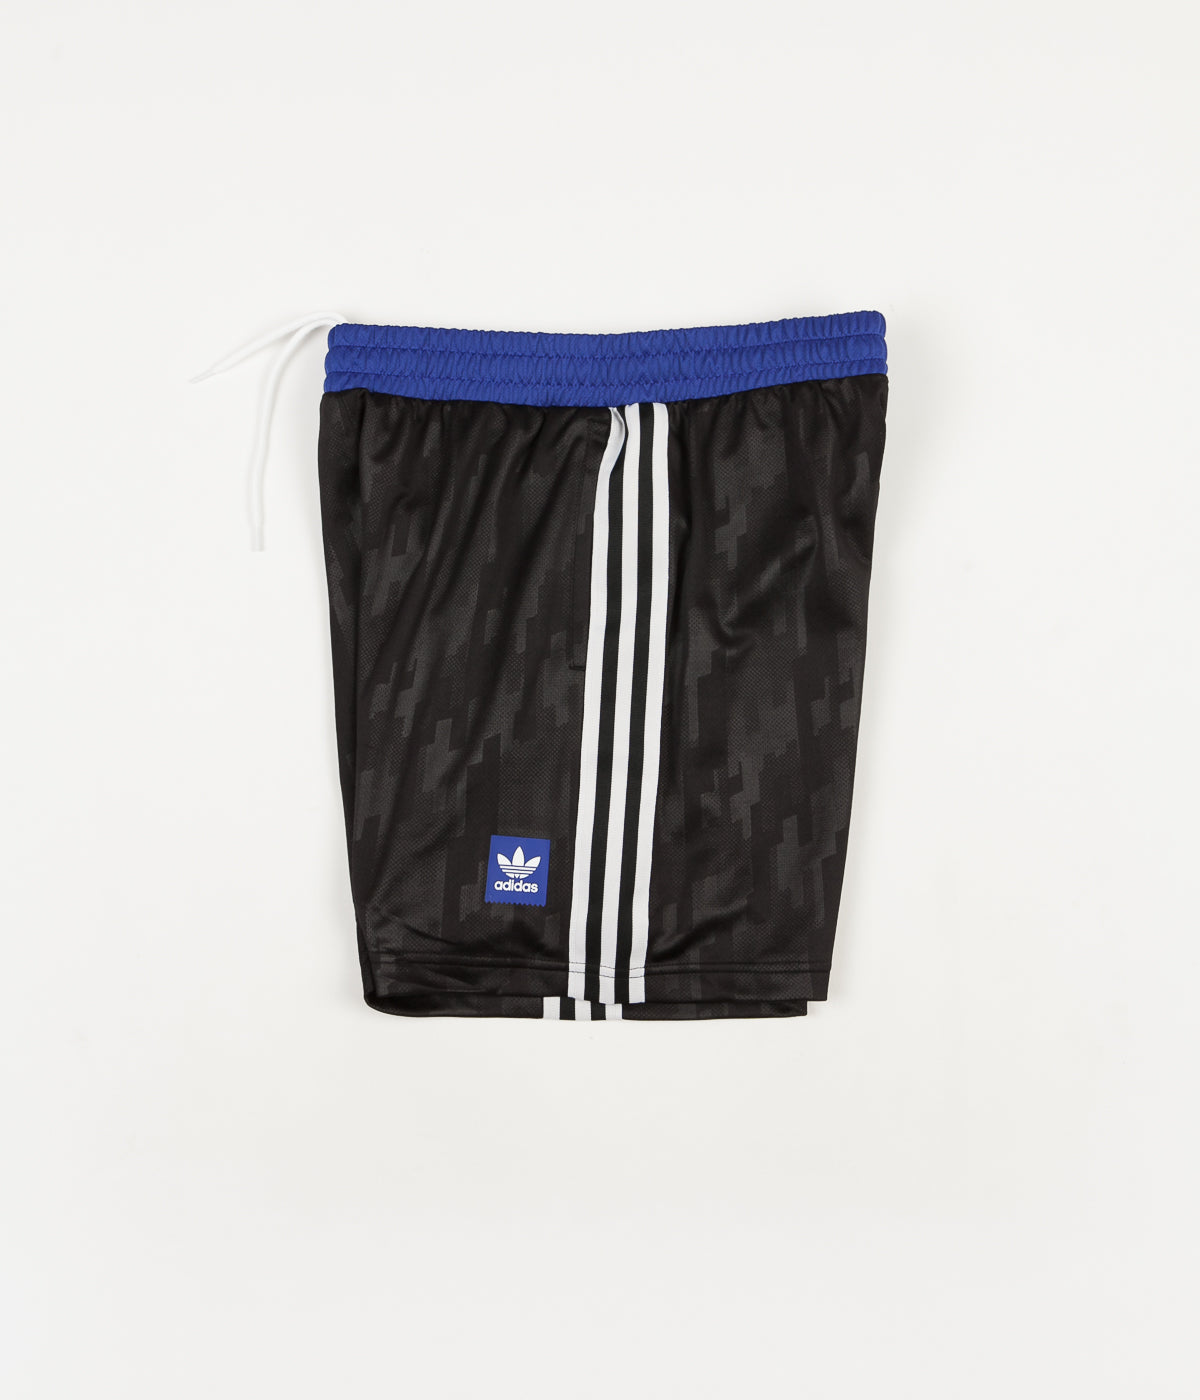 Adidas Dodson Shorts - Black / White 